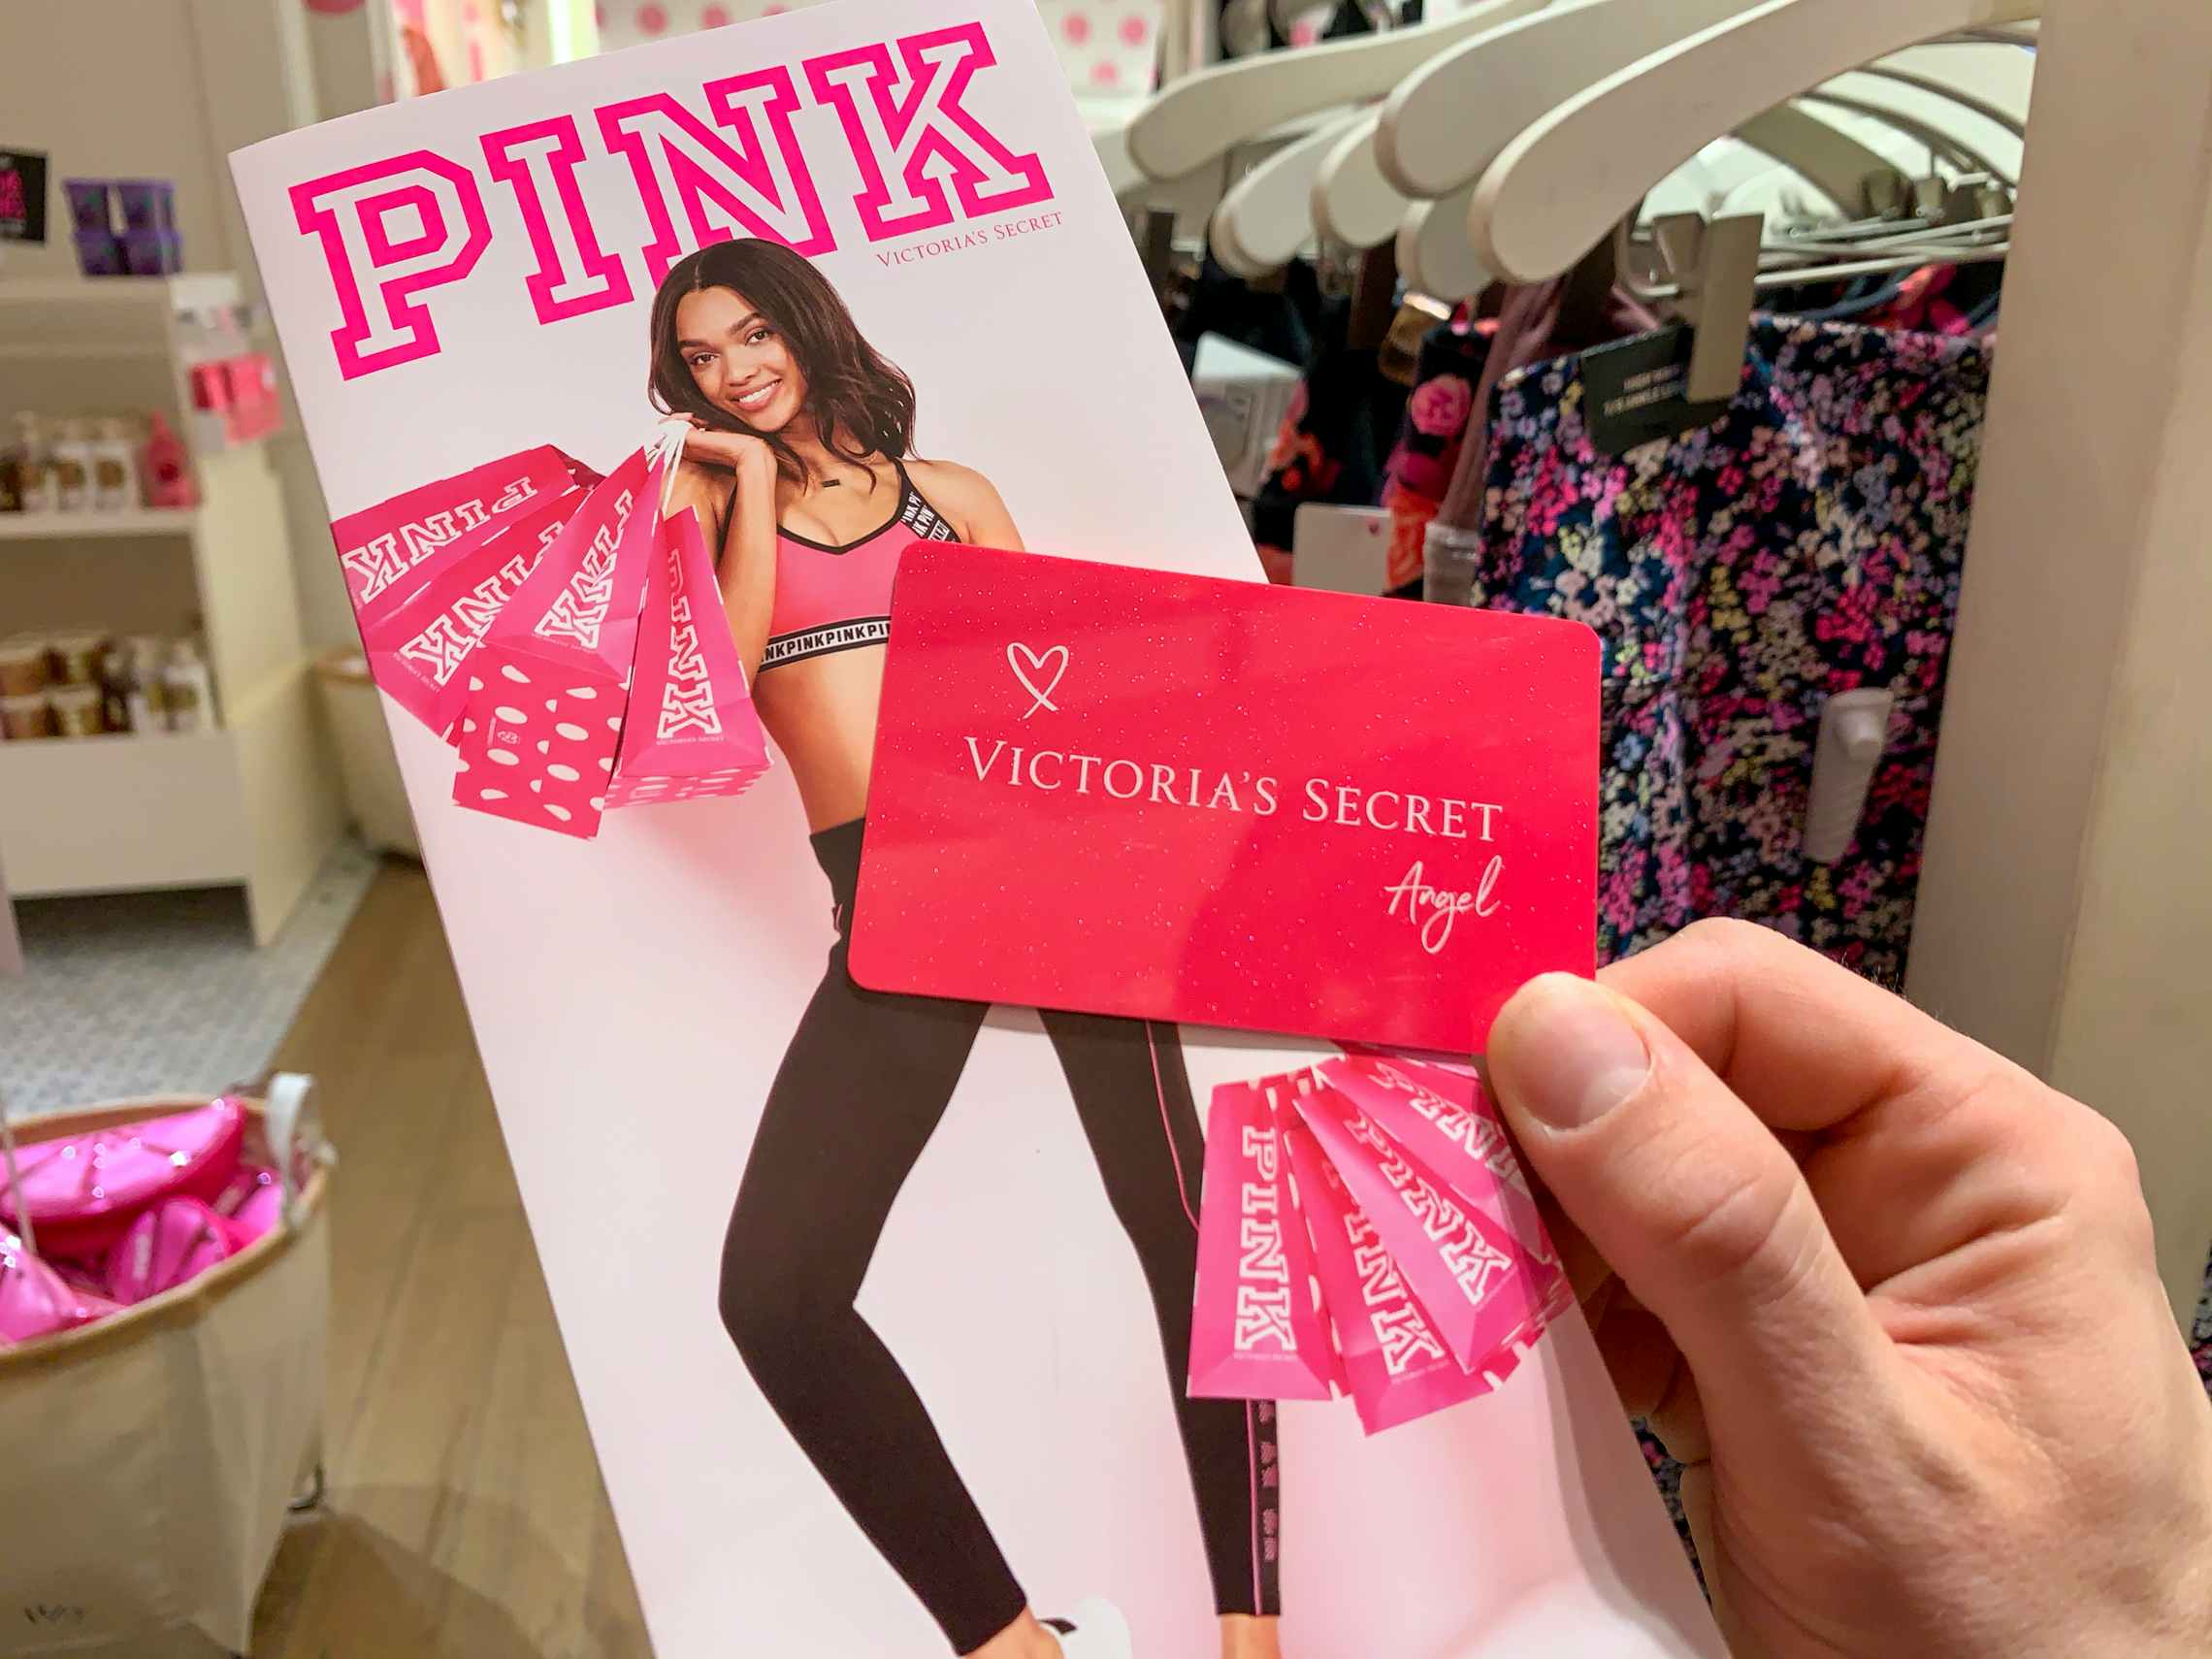 Exchange - Attention! Victoria's Secret Semi-Annual Sale